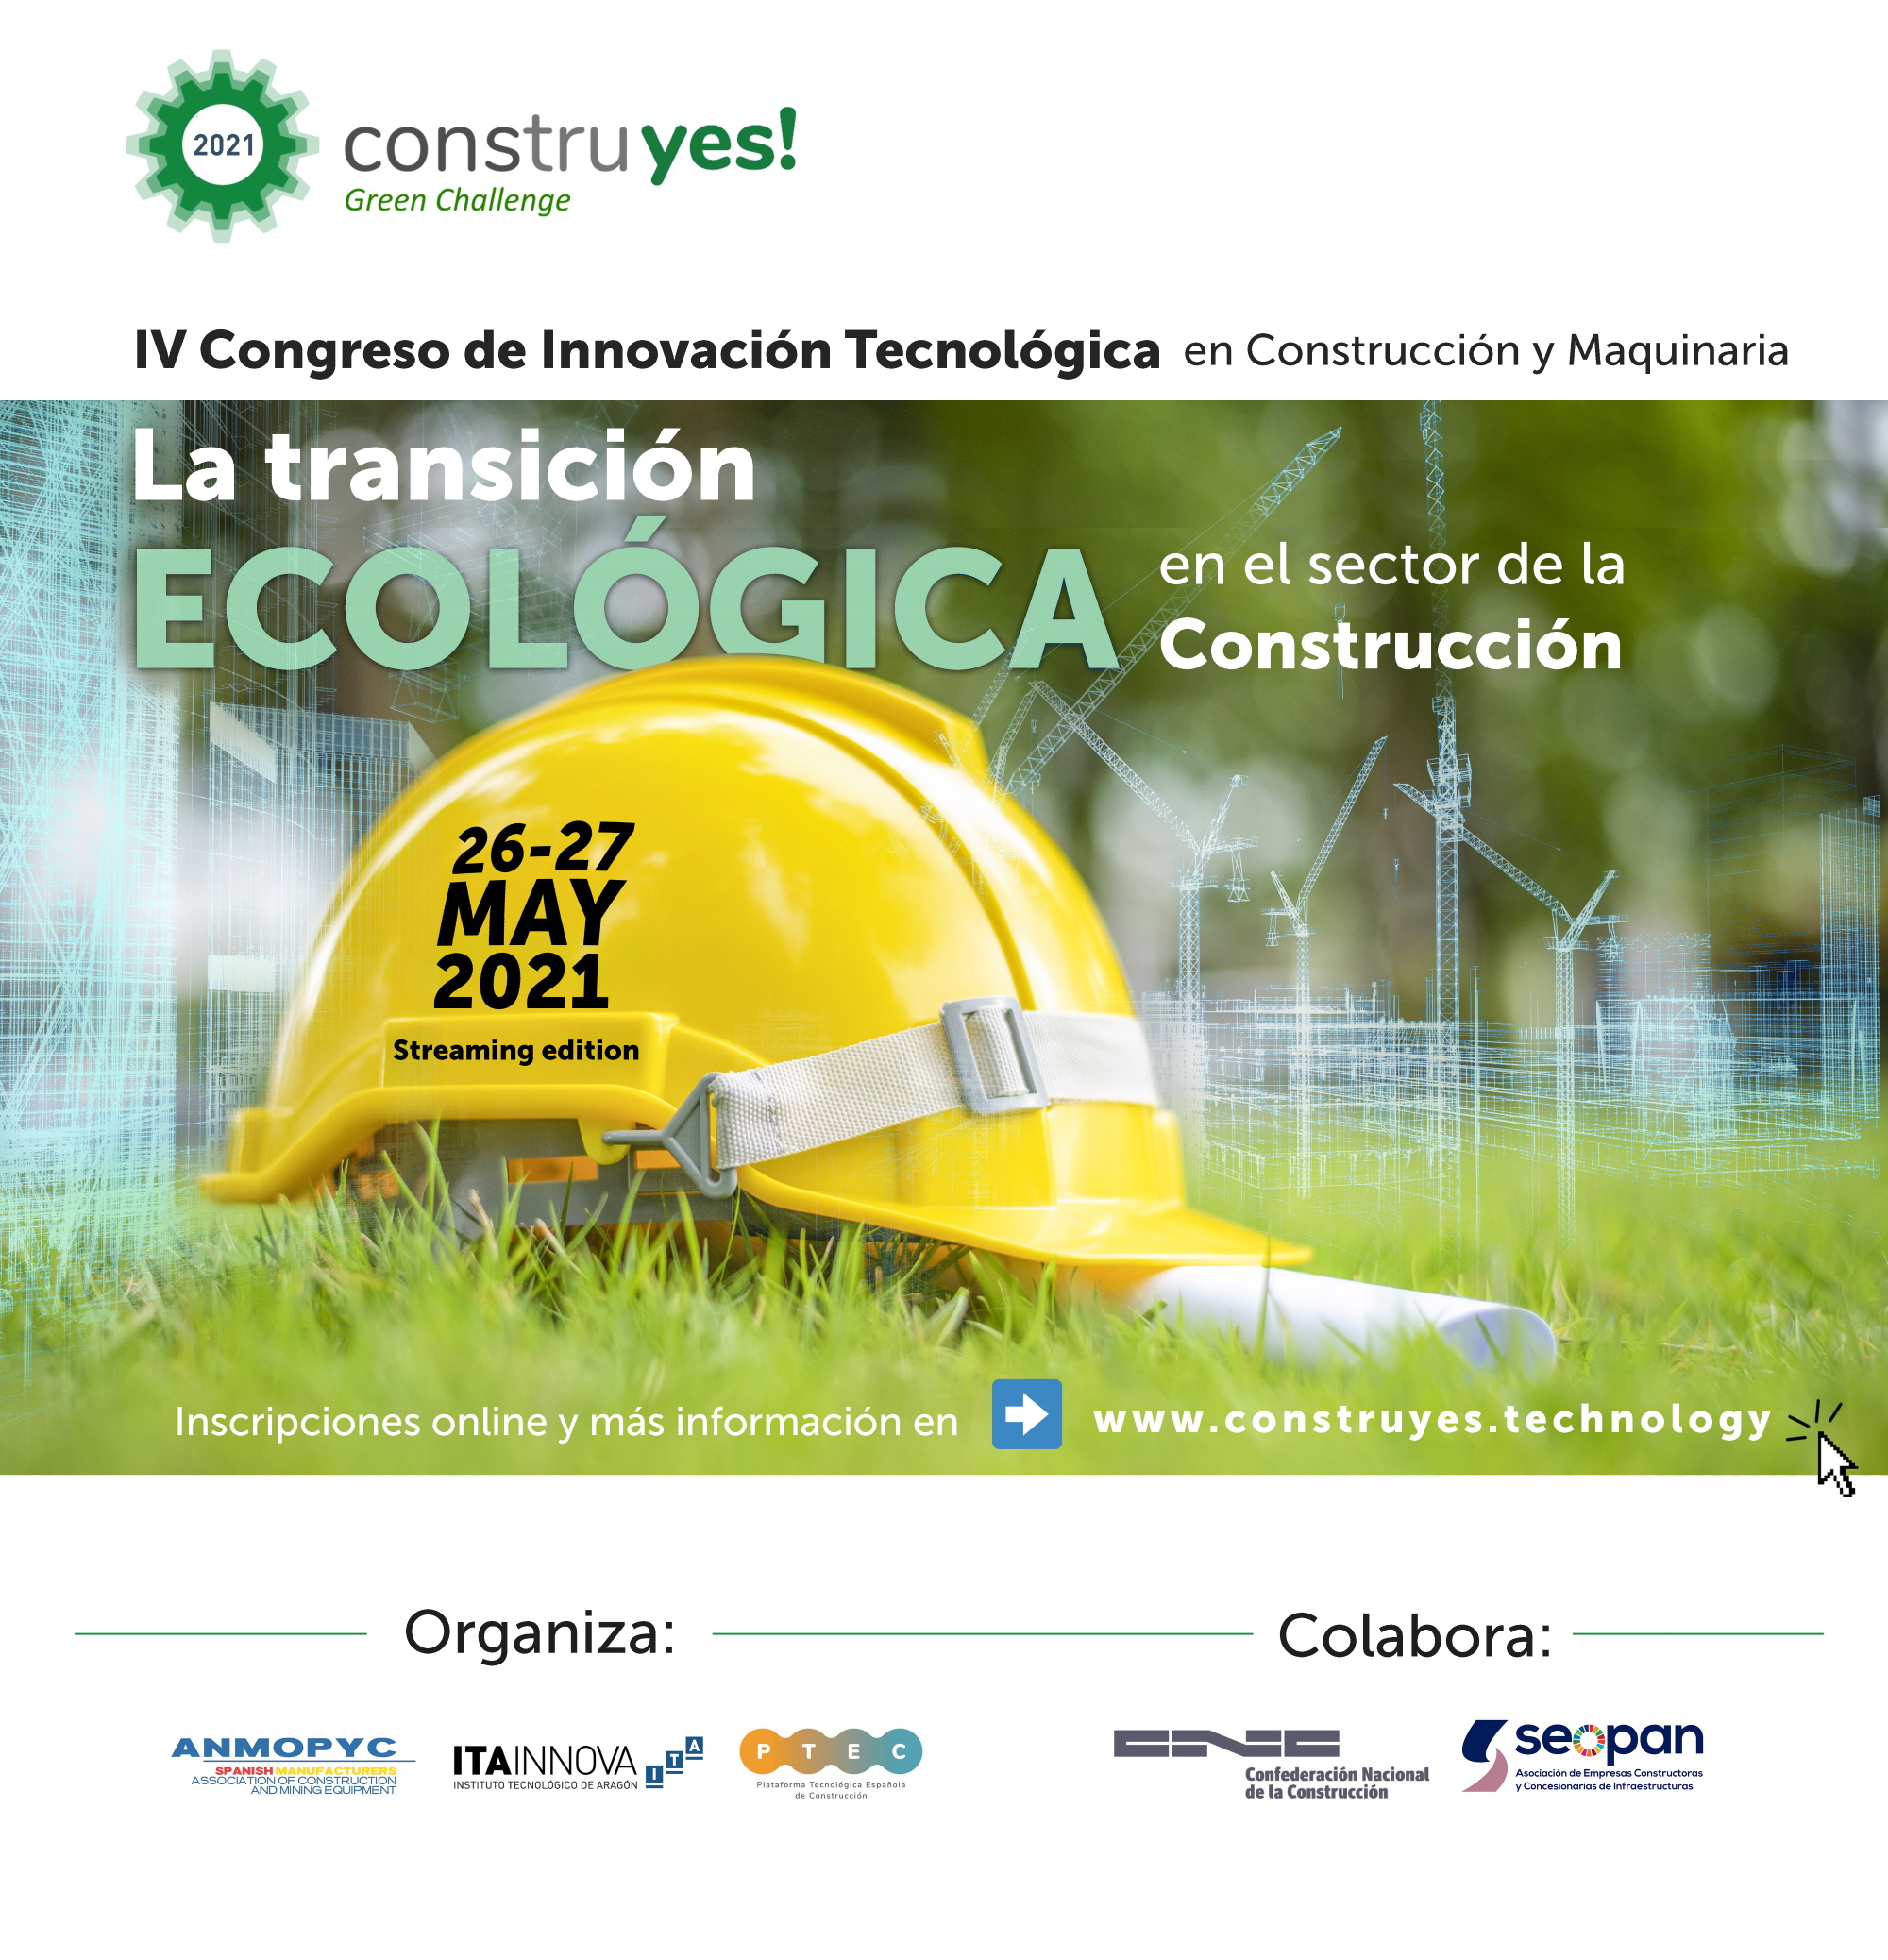 El congreso construyes! se centrará en la transición ecológica, la tecnología y la digitalización